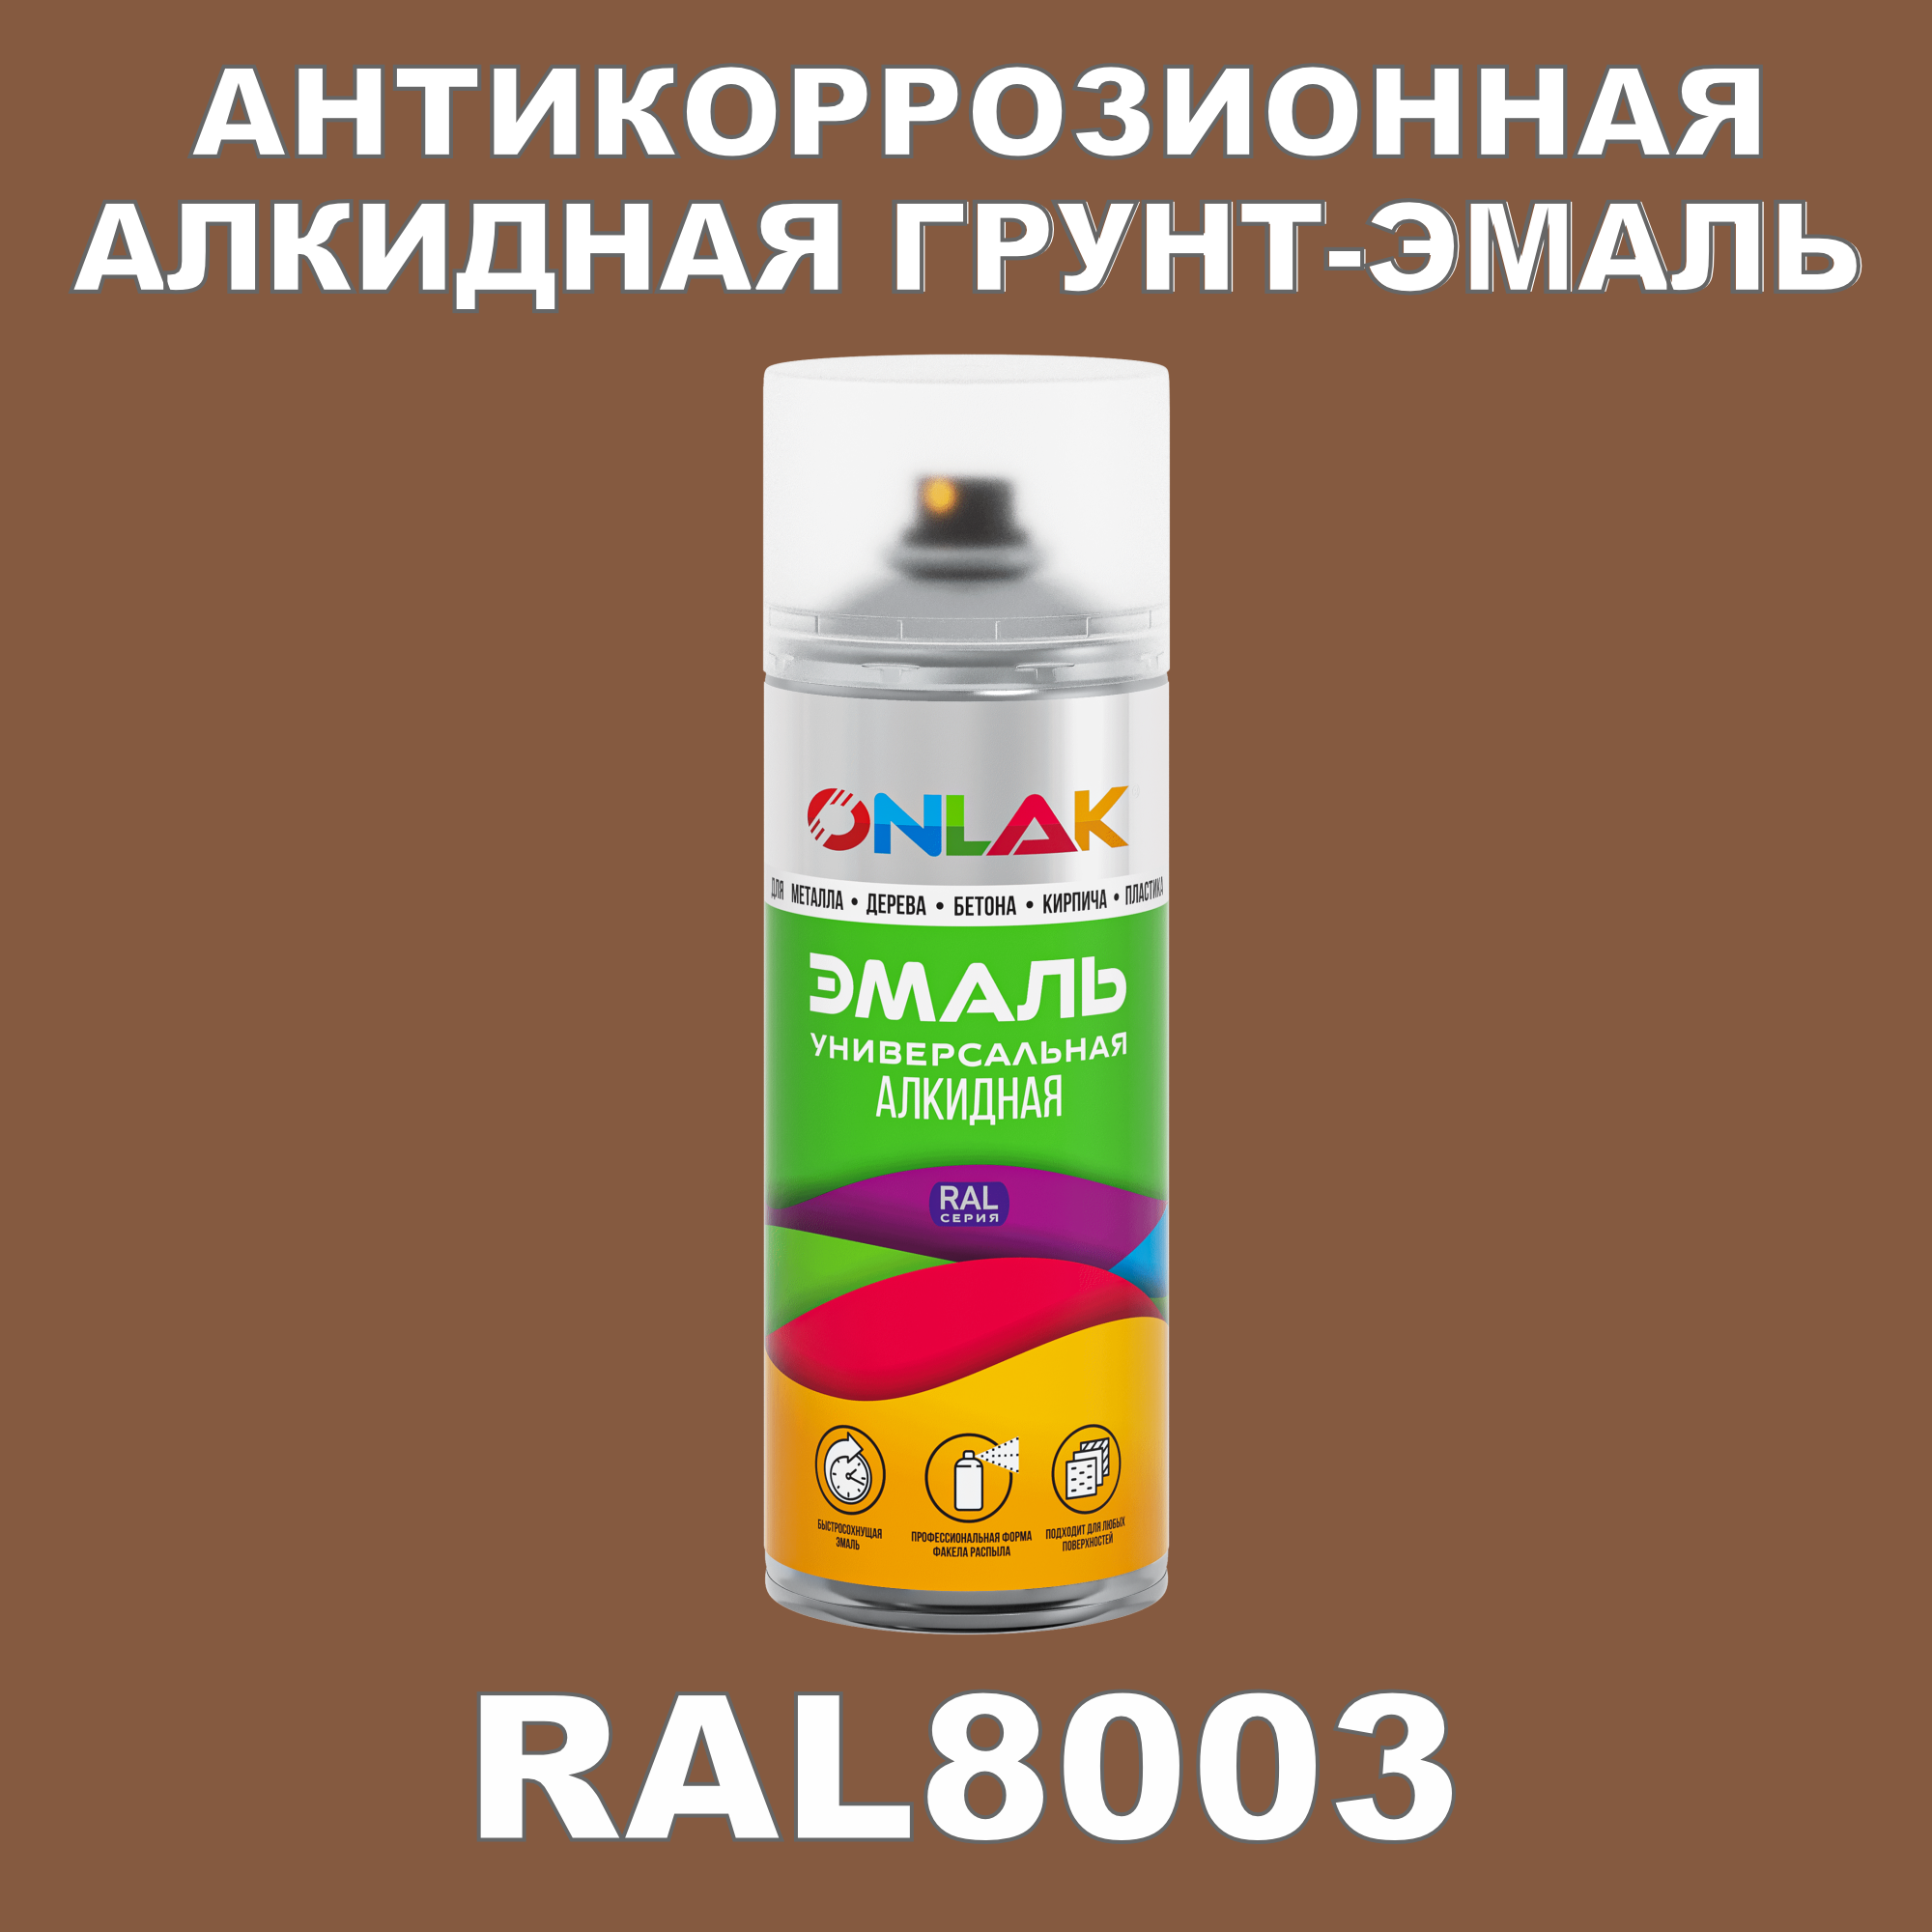 Антикоррозионная грунт-эмаль ONLAK RAL8003 полуматовая для металла и защиты от ржавчины